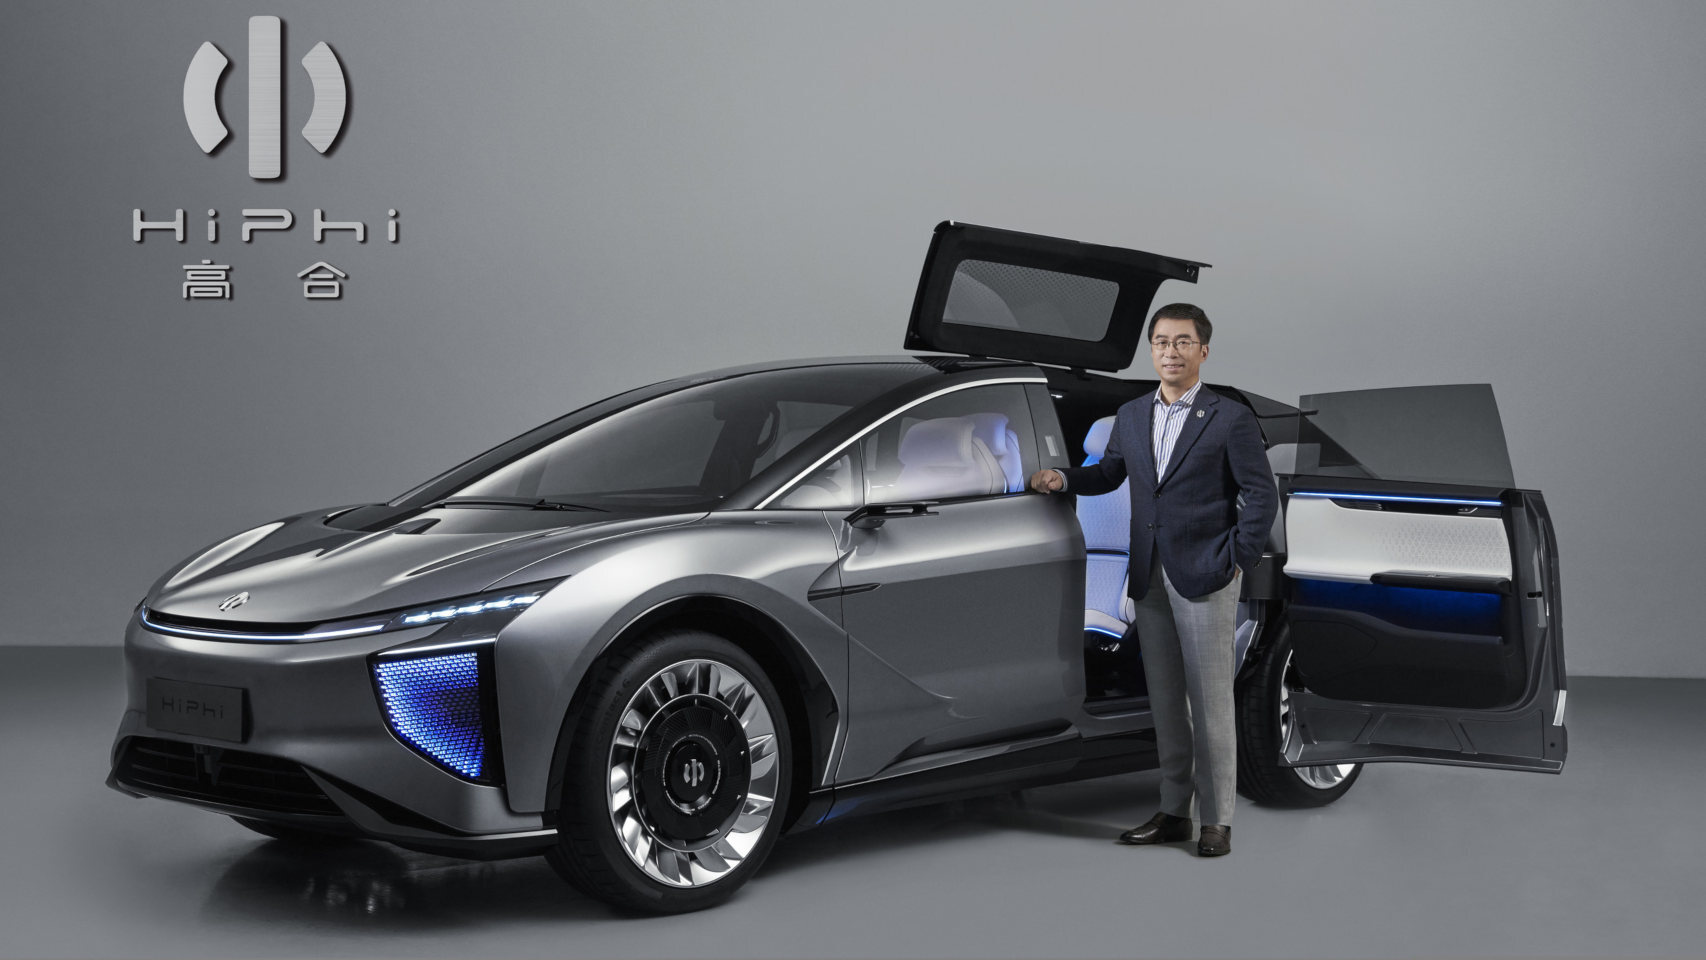 El primer SUV eléctrico con 5G es capaz de conectarse a ciudades inteligentes